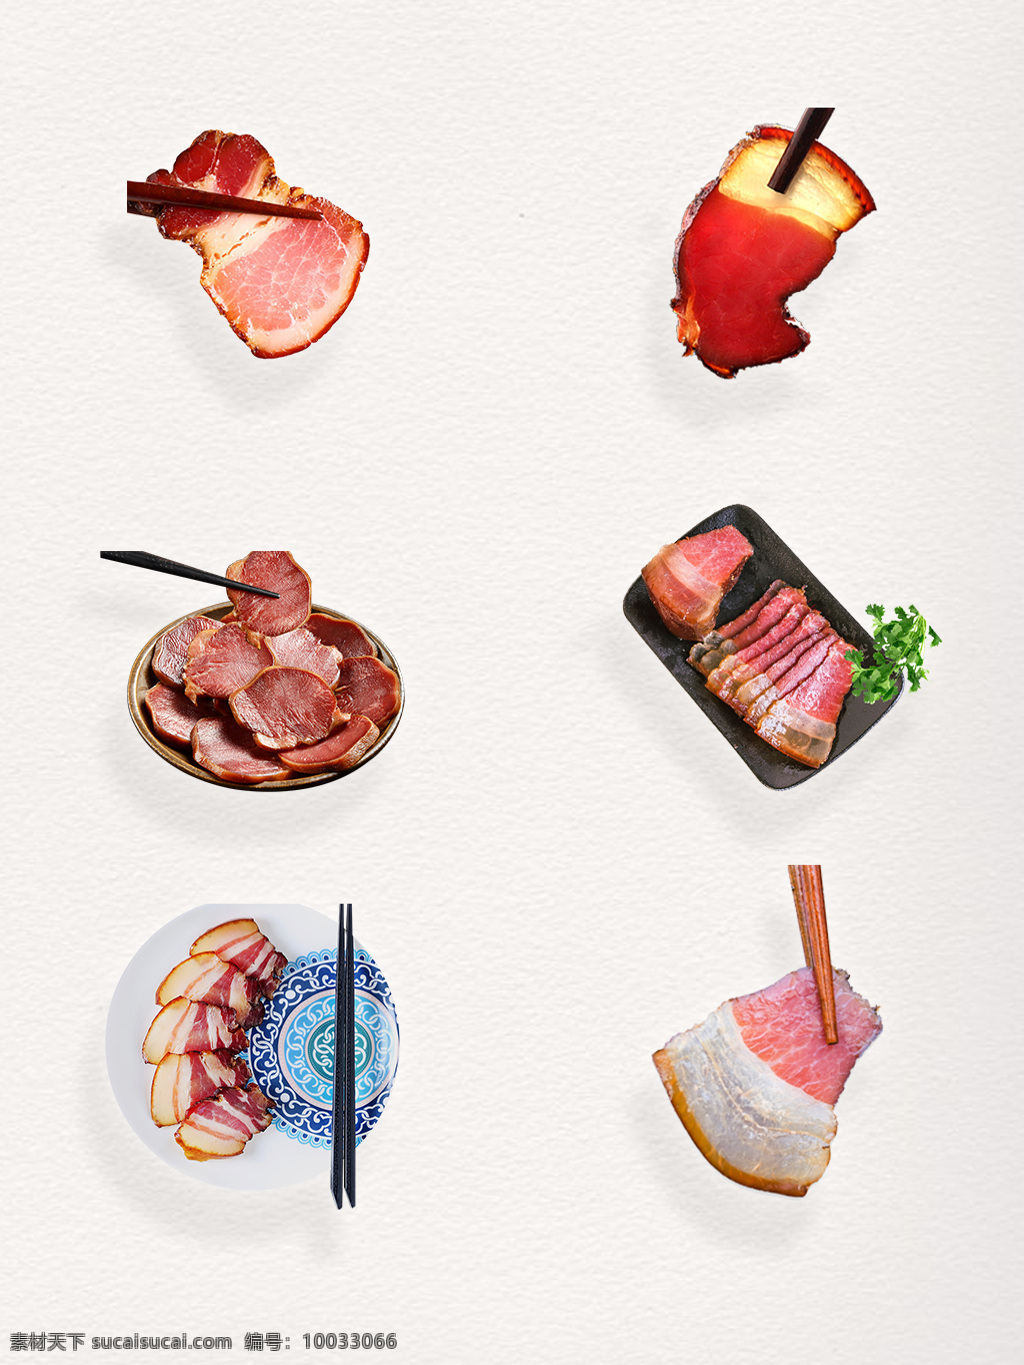 中式 美食 美味 食物 腊味 食品 元素 装饰 图案 充饥 传统 红色 节假日 品尝 庆贺 庆祝 肉类 小吃